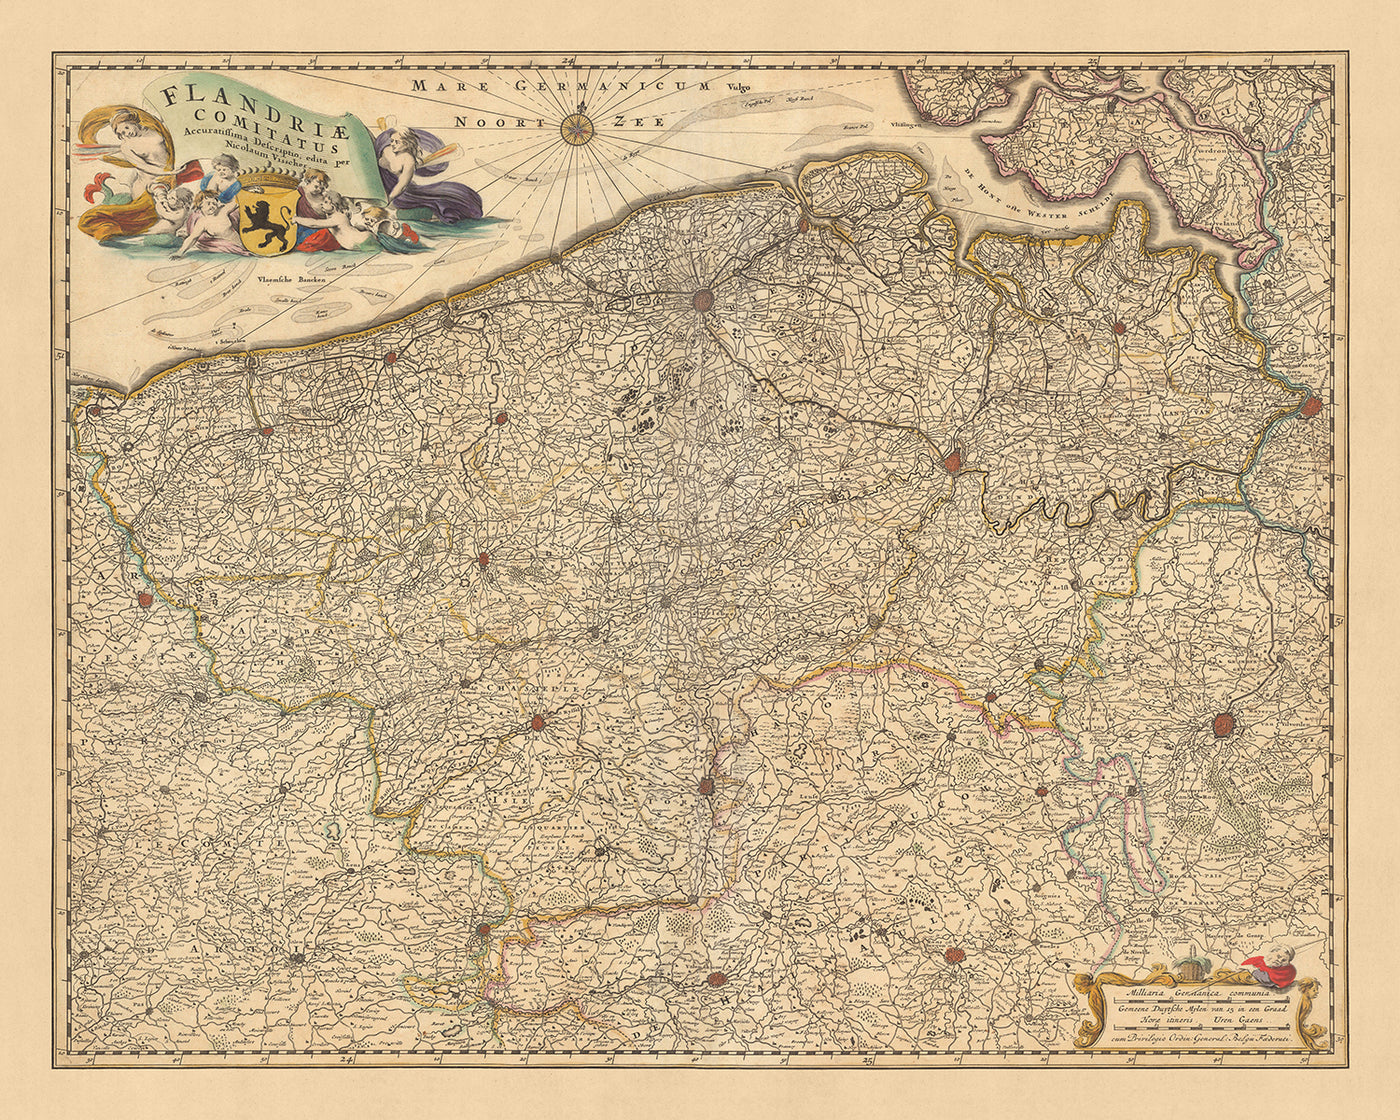 Alte Karte von Flandern von Visscher, 1690: Brüssel, Antwerpen, Gent, Brügge, Scarpe-Escaut-Park